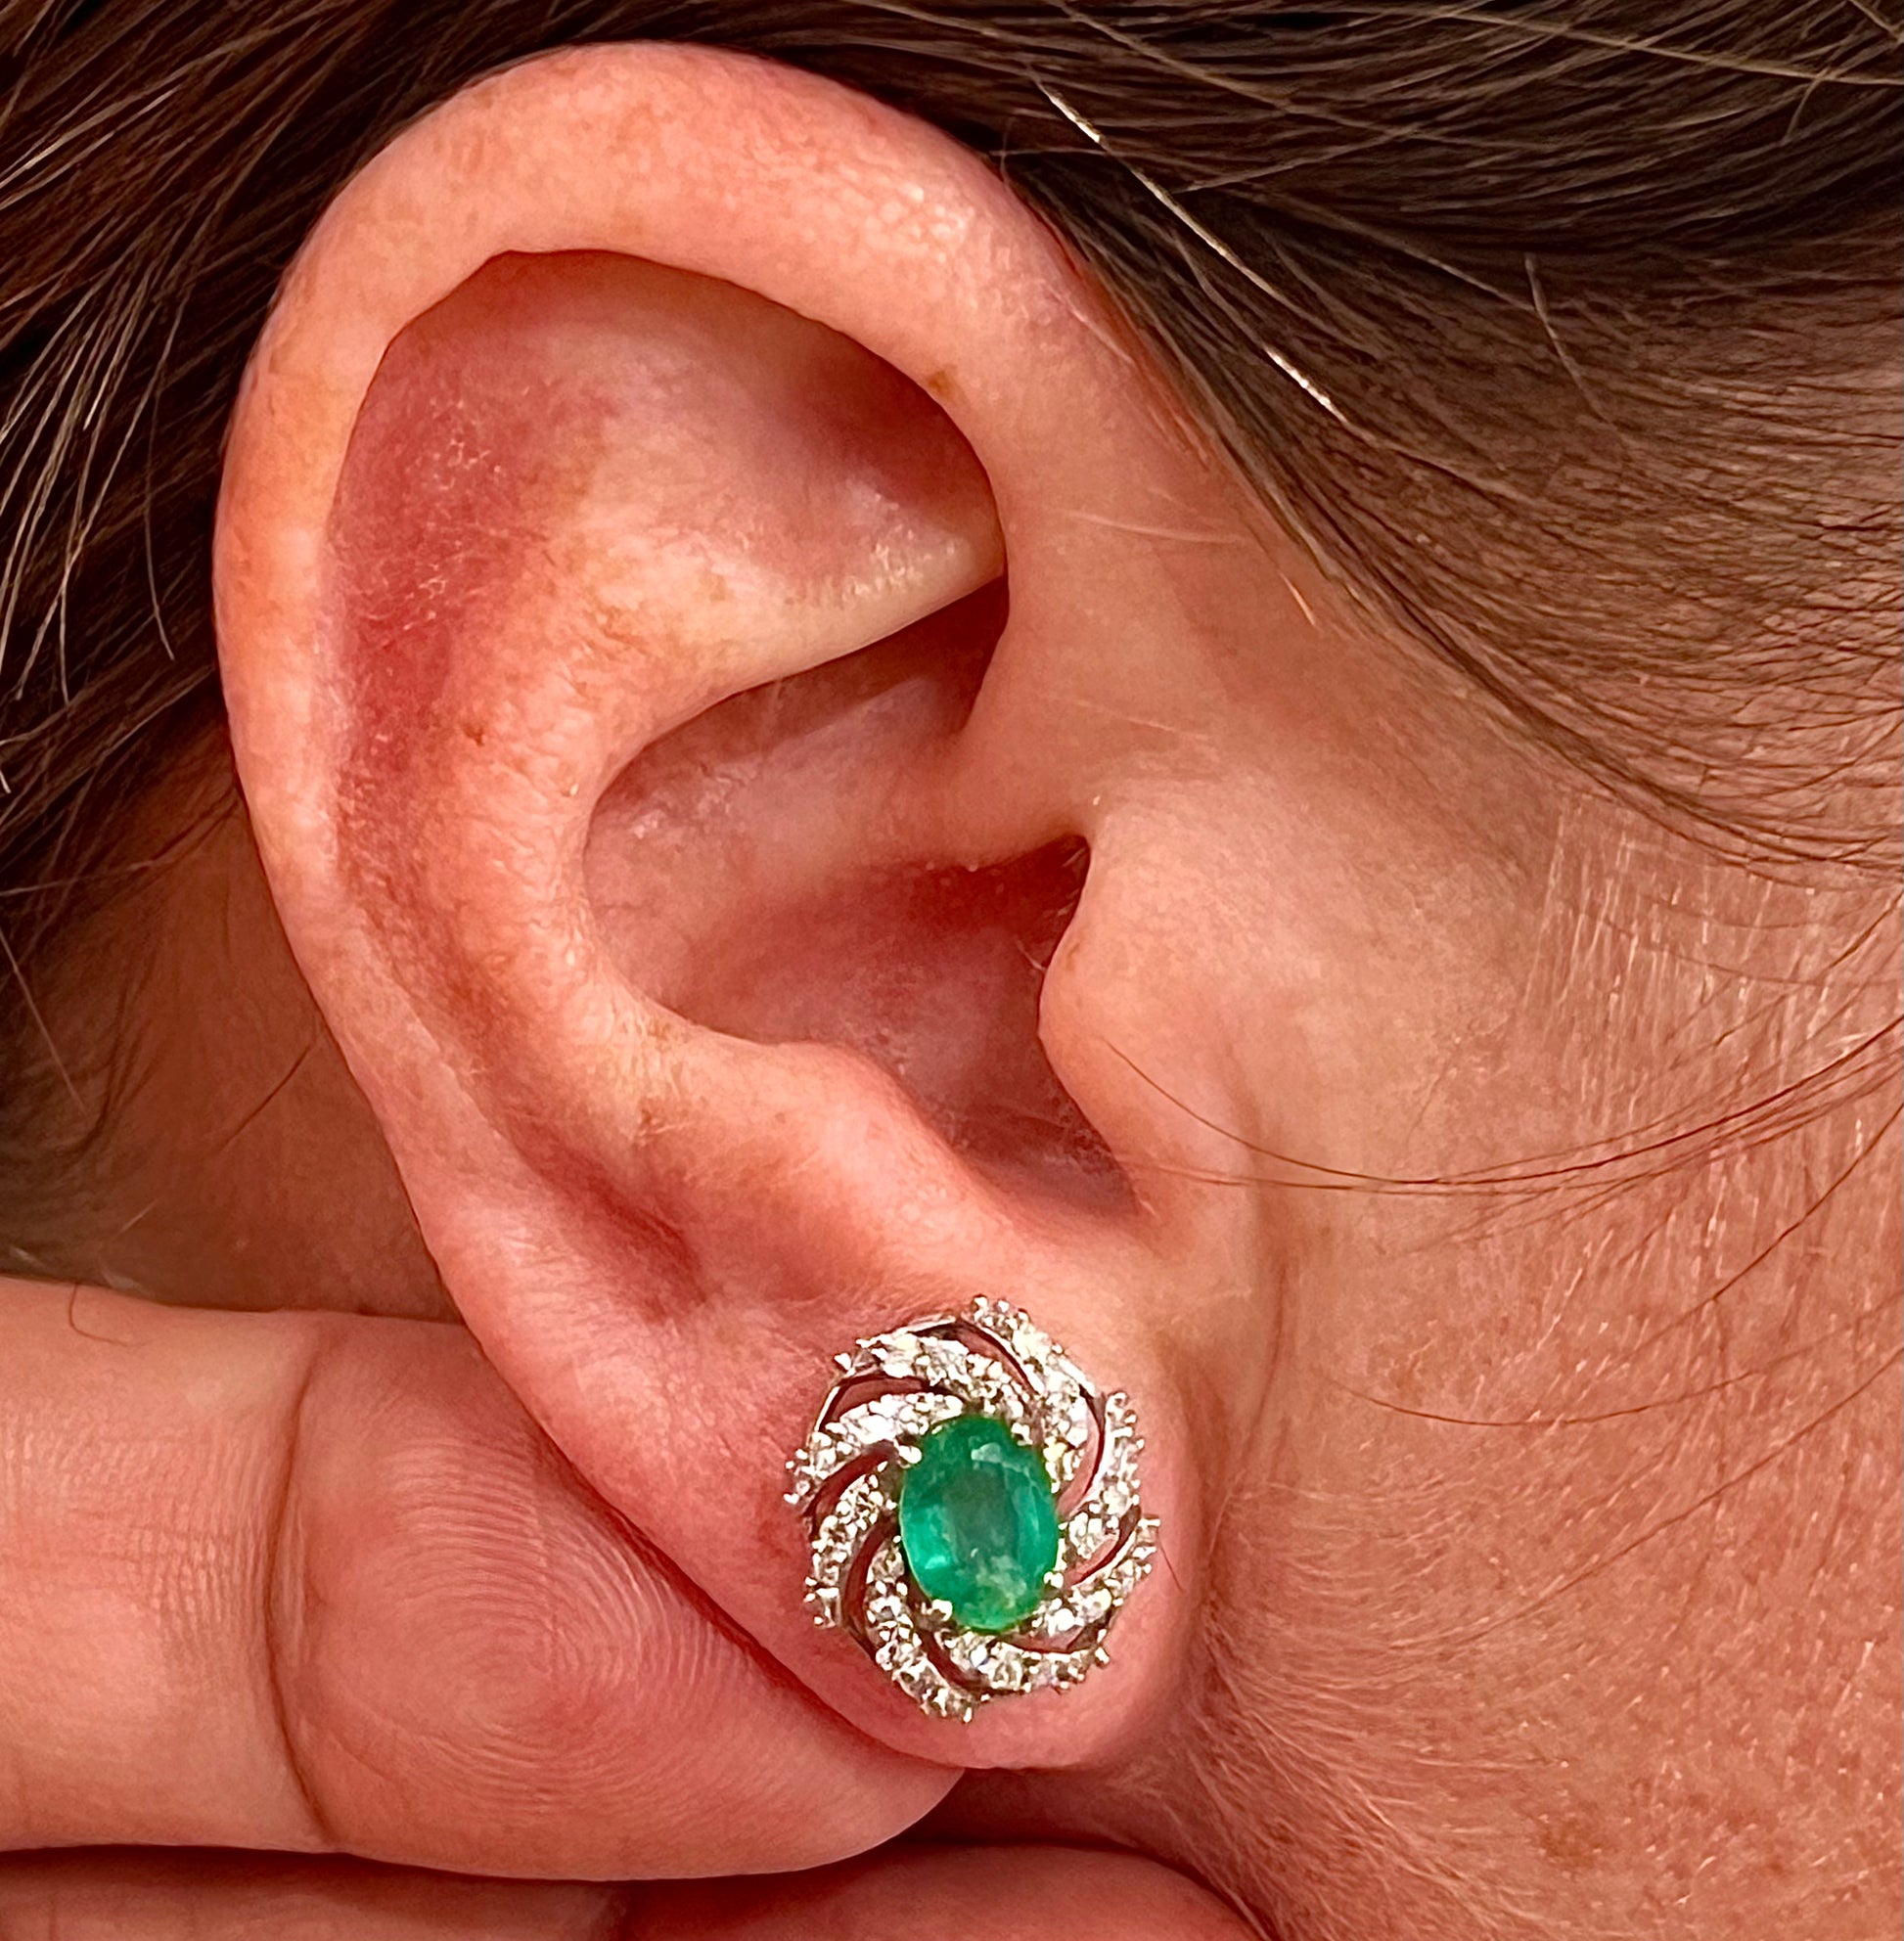 Diamond Emerald Earrings 14k White Gold 2.17 TCW Certified $5,950 018695 - Certified Fine Jewelry